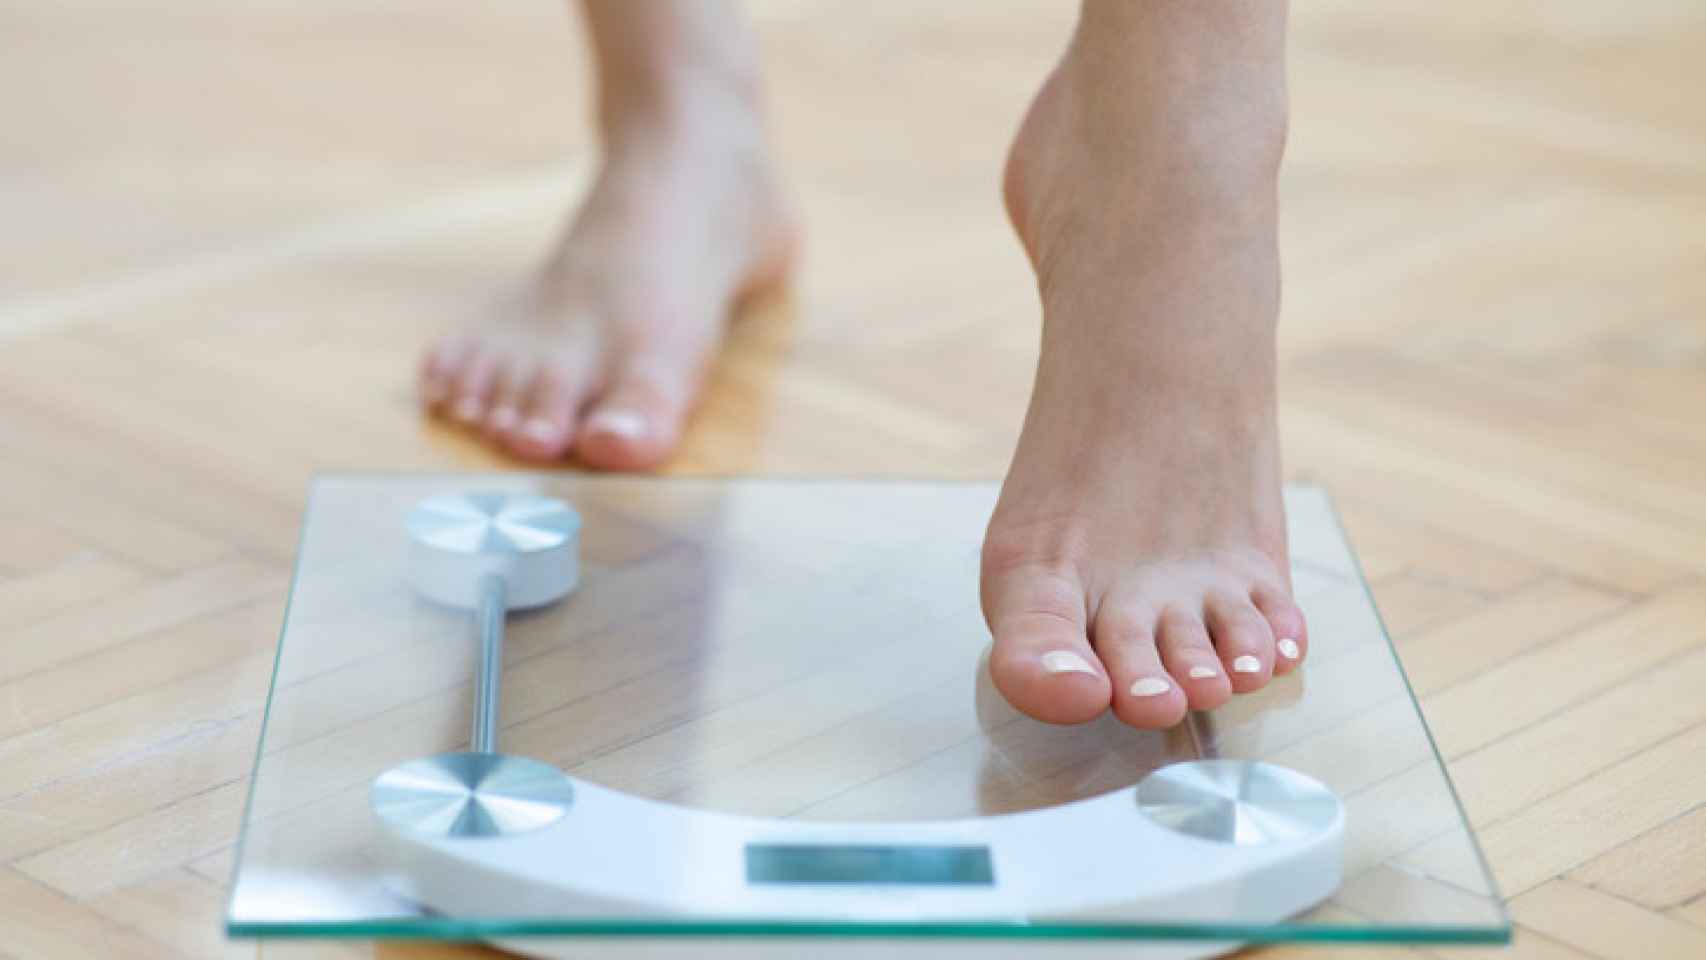 Calcula tu peso ideal y tu índice de masa corporal.